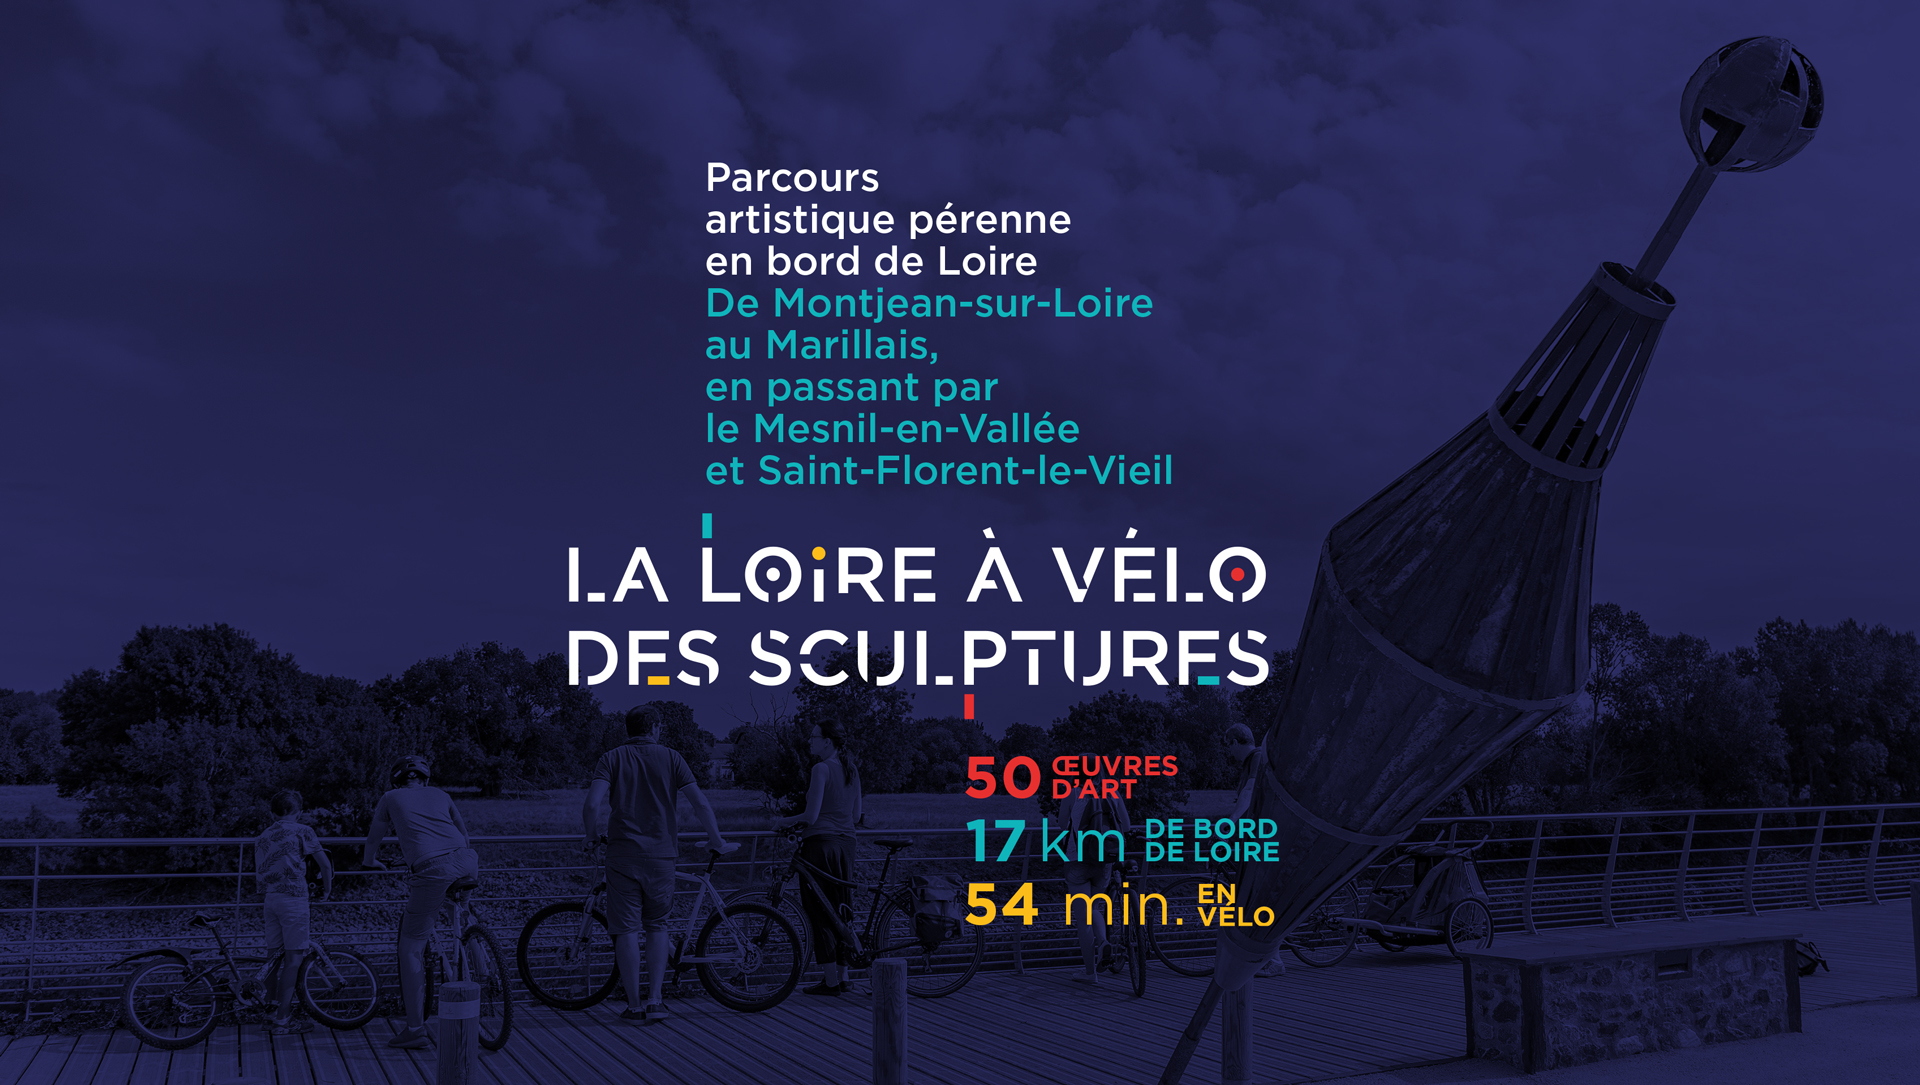 Mauges sur Loire Loire a velos des sculptures